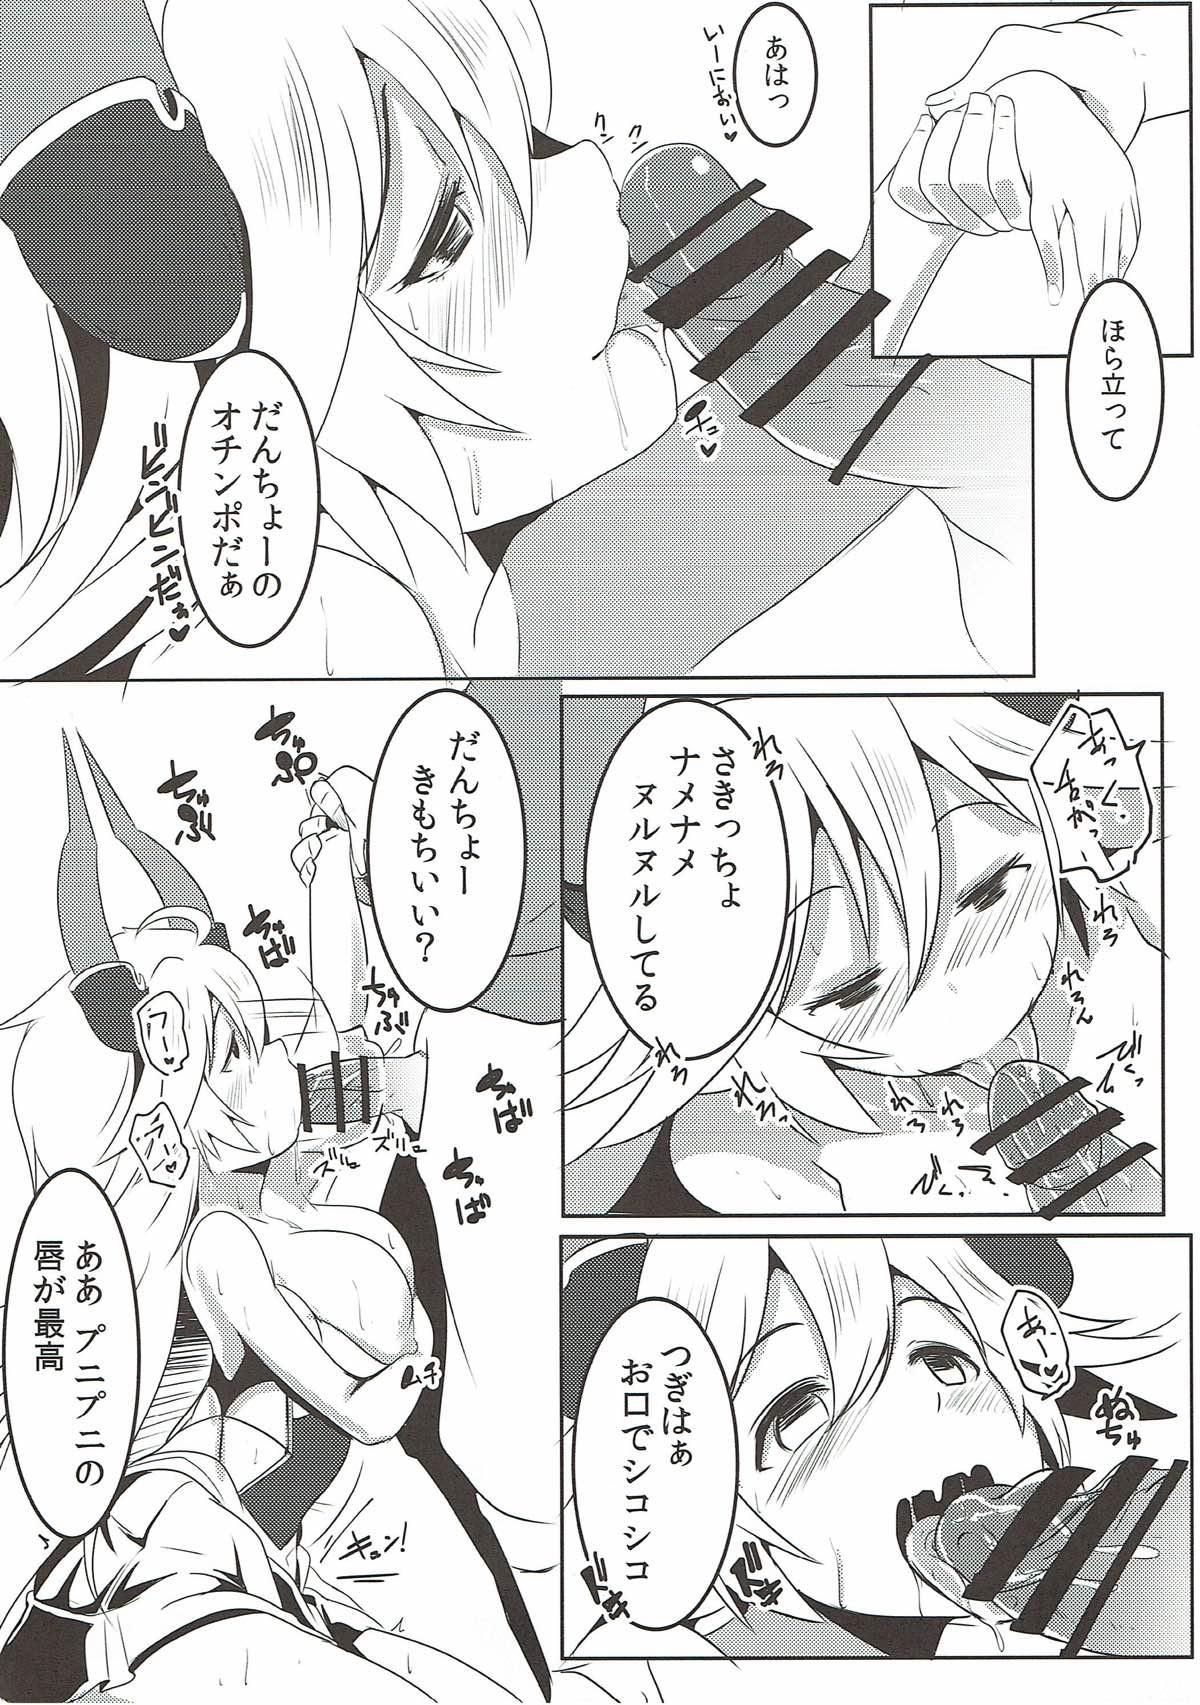 Spreading Uchi no Sarasa ga Nanka Kawaii - Granblue fantasy Tranny Sex - Page 9